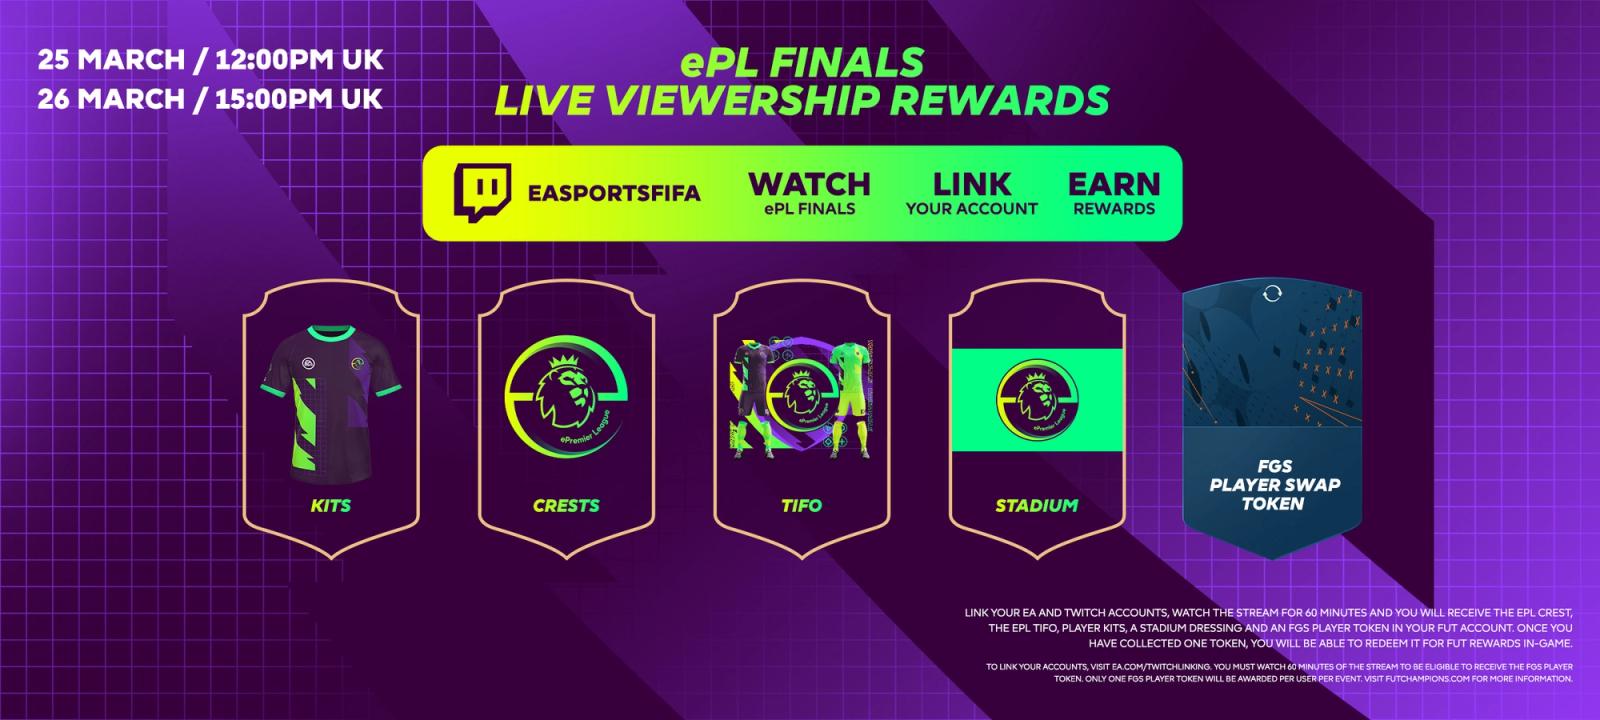 epremier league finals viewership rewards